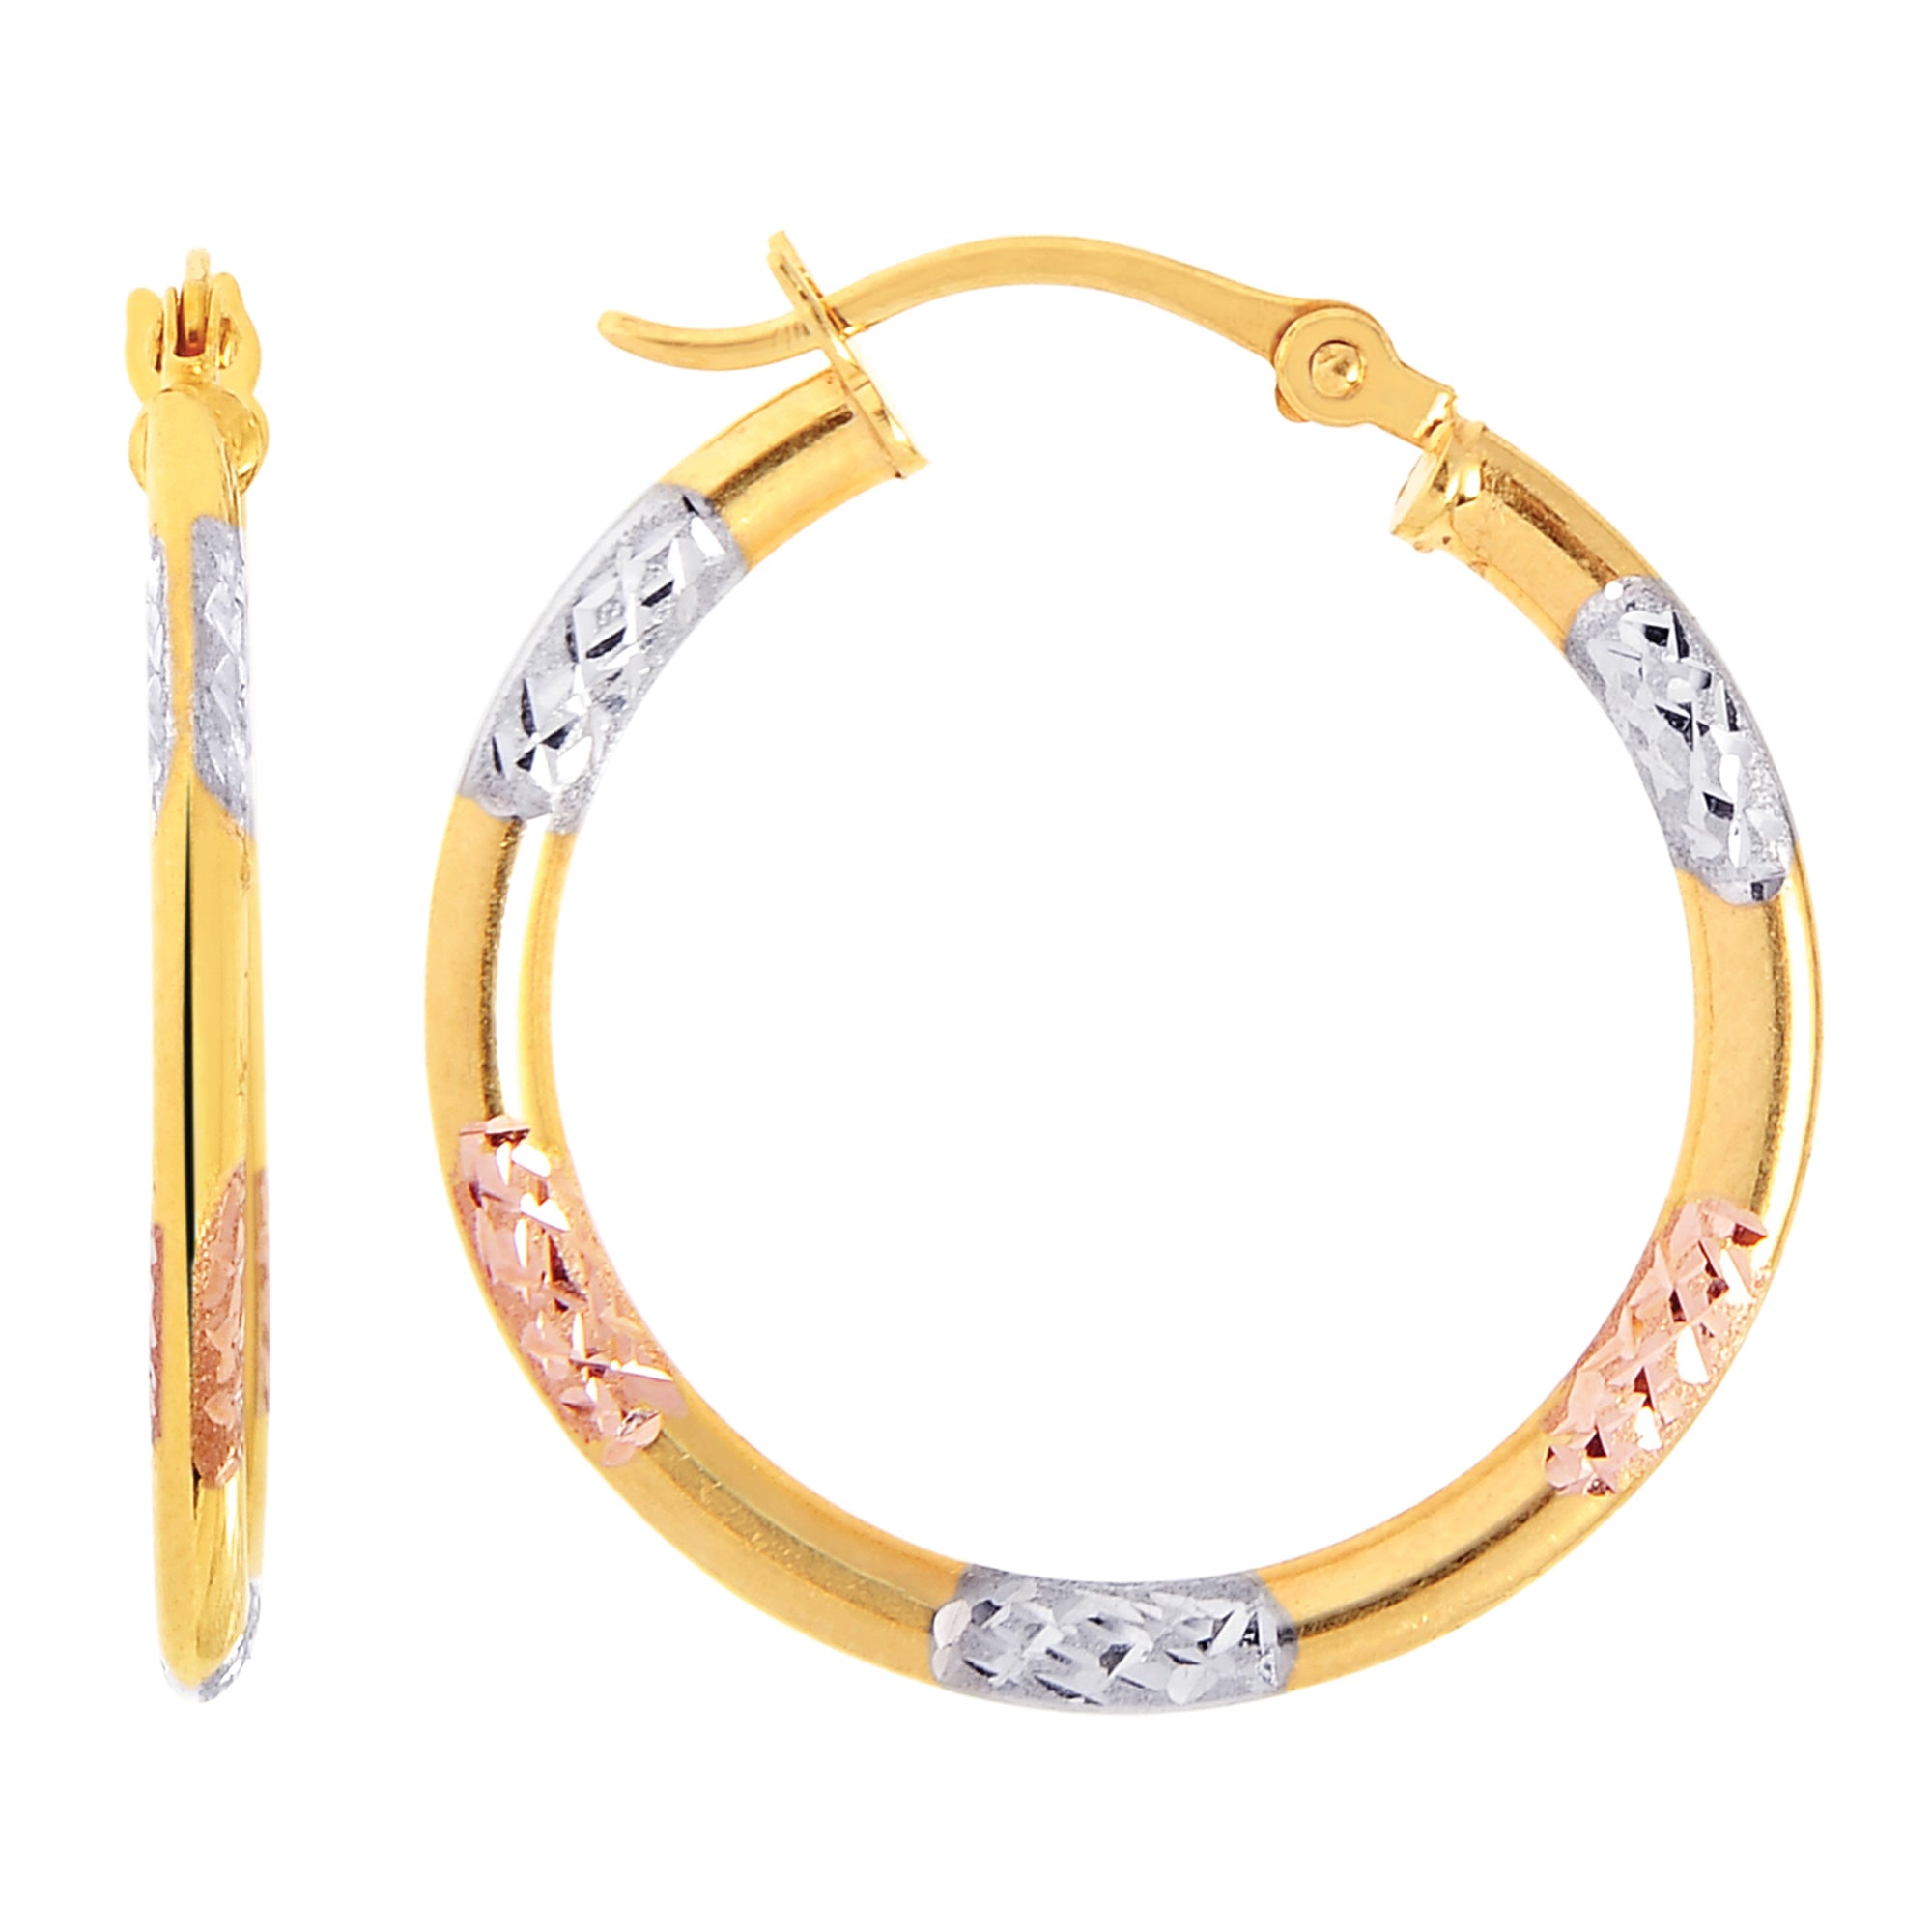 Pendientes de aro redondos con corte de diamante en oro blanco, amarillo y rosa tricolor de 10 quilates, joyería fina de diseño de 20 mm de diámetro para hombres y mujeres